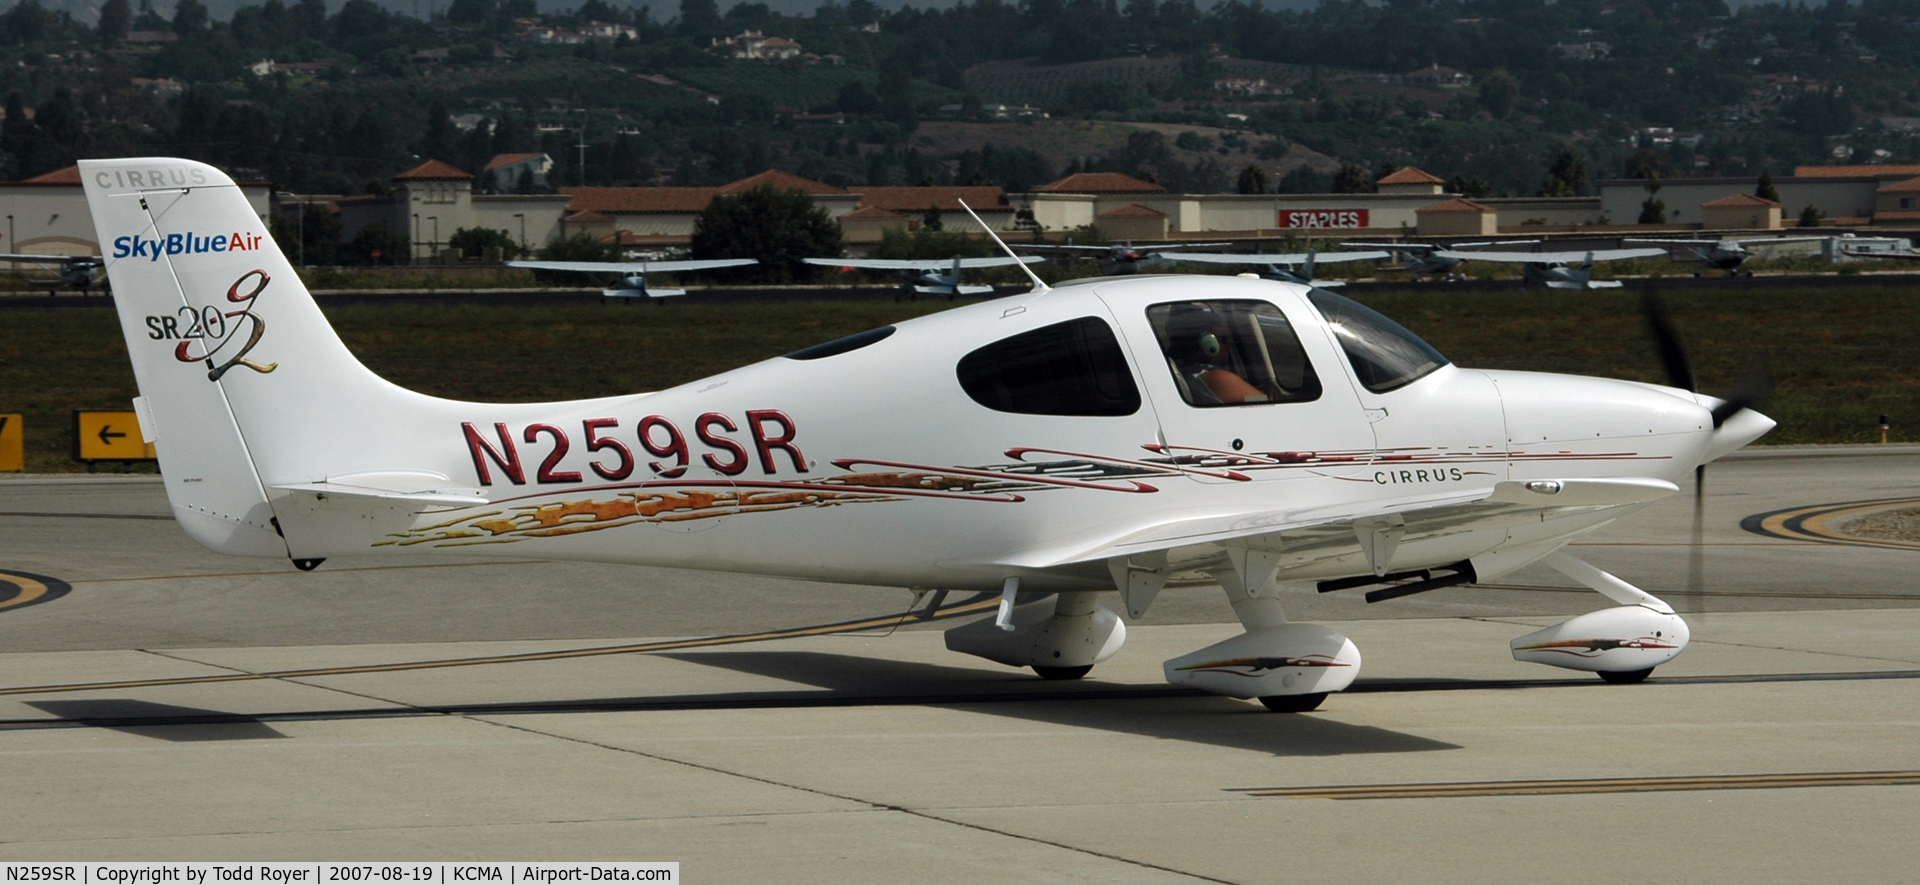 N259SR, 2006 Cirrus SR20 C/N 1749, Camarillo airshow 2007